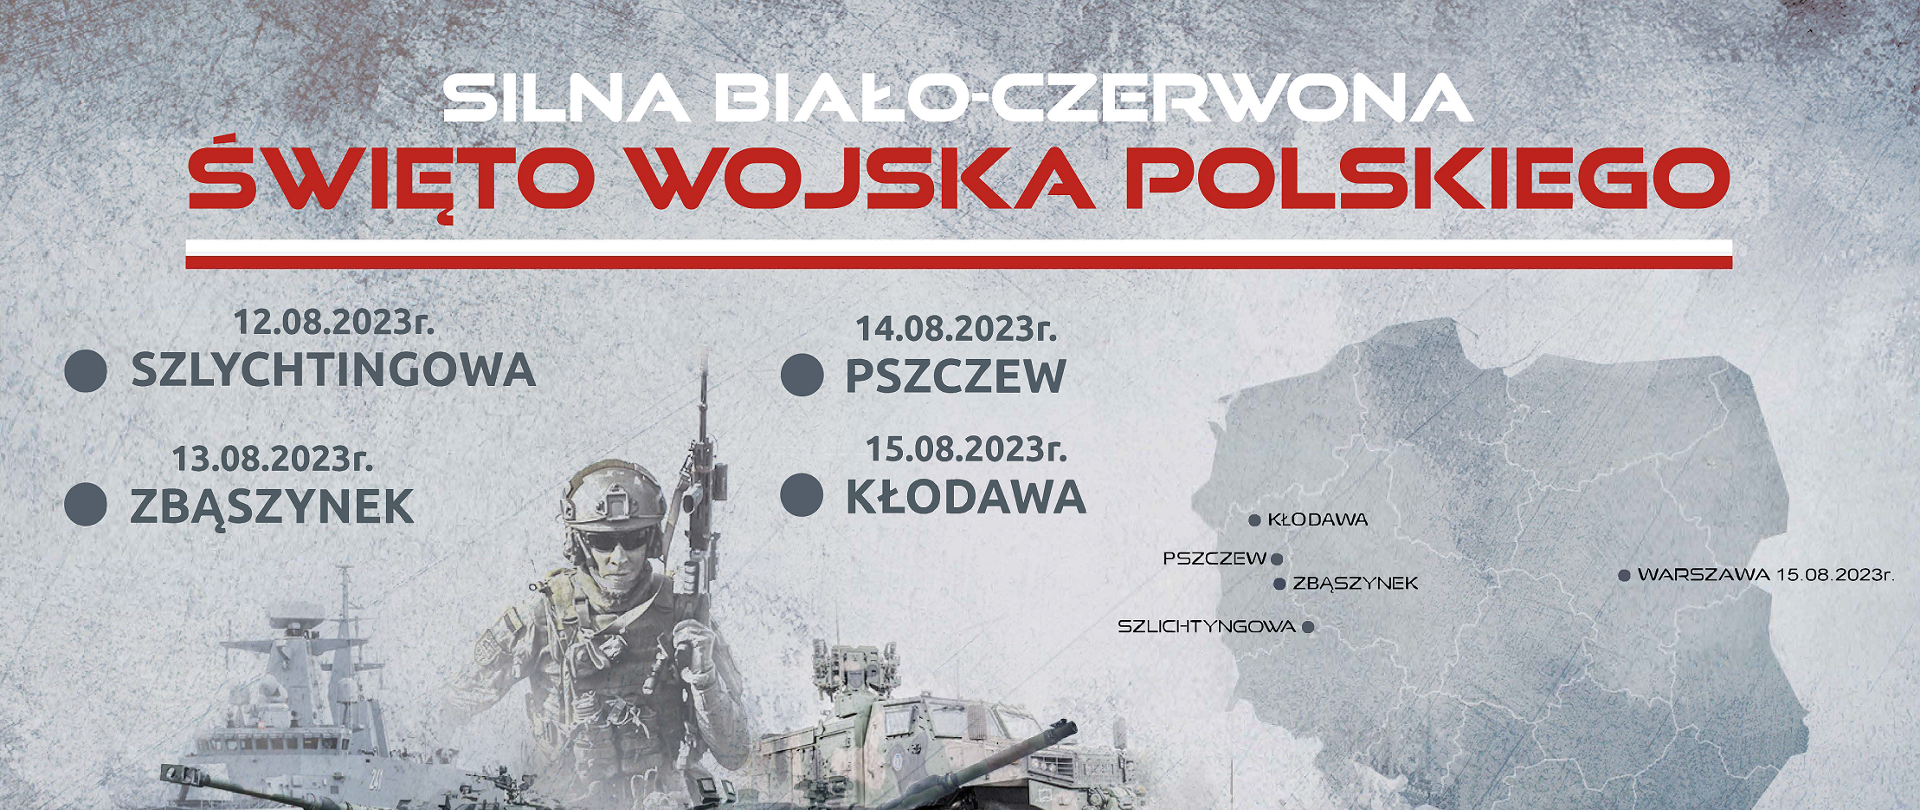 plakat promujący Święto Wojska Polskiego 2023